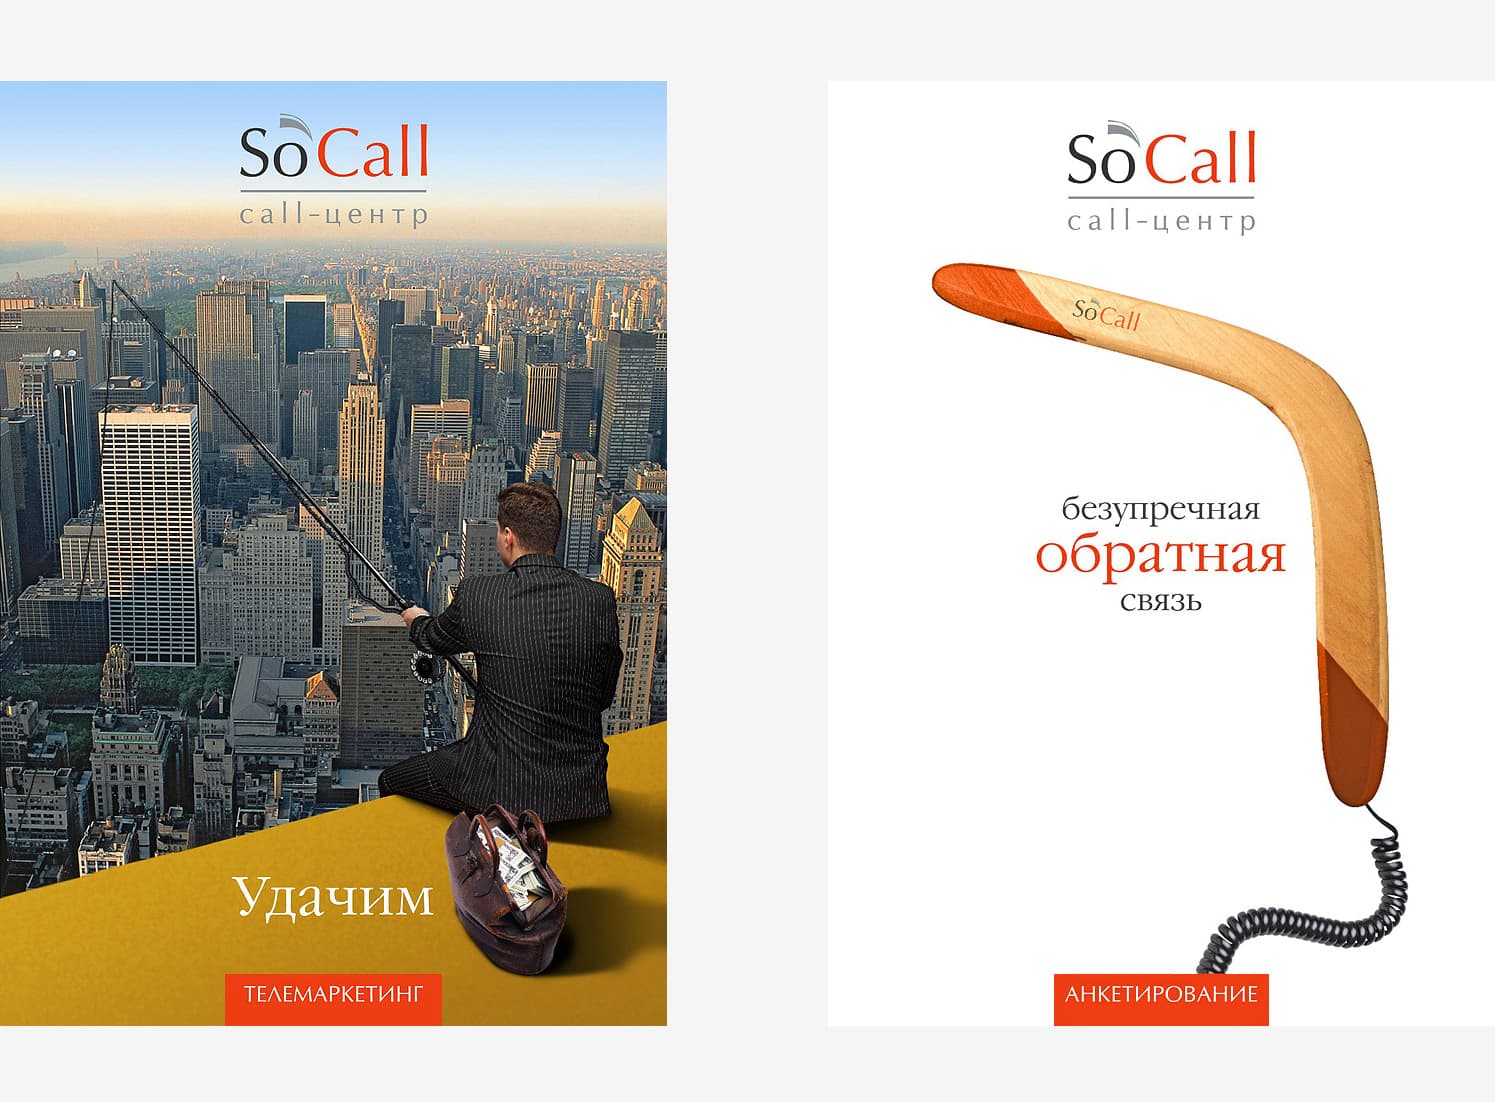 Серия креативных рекламных постеров на услуги колл-центра So`Call